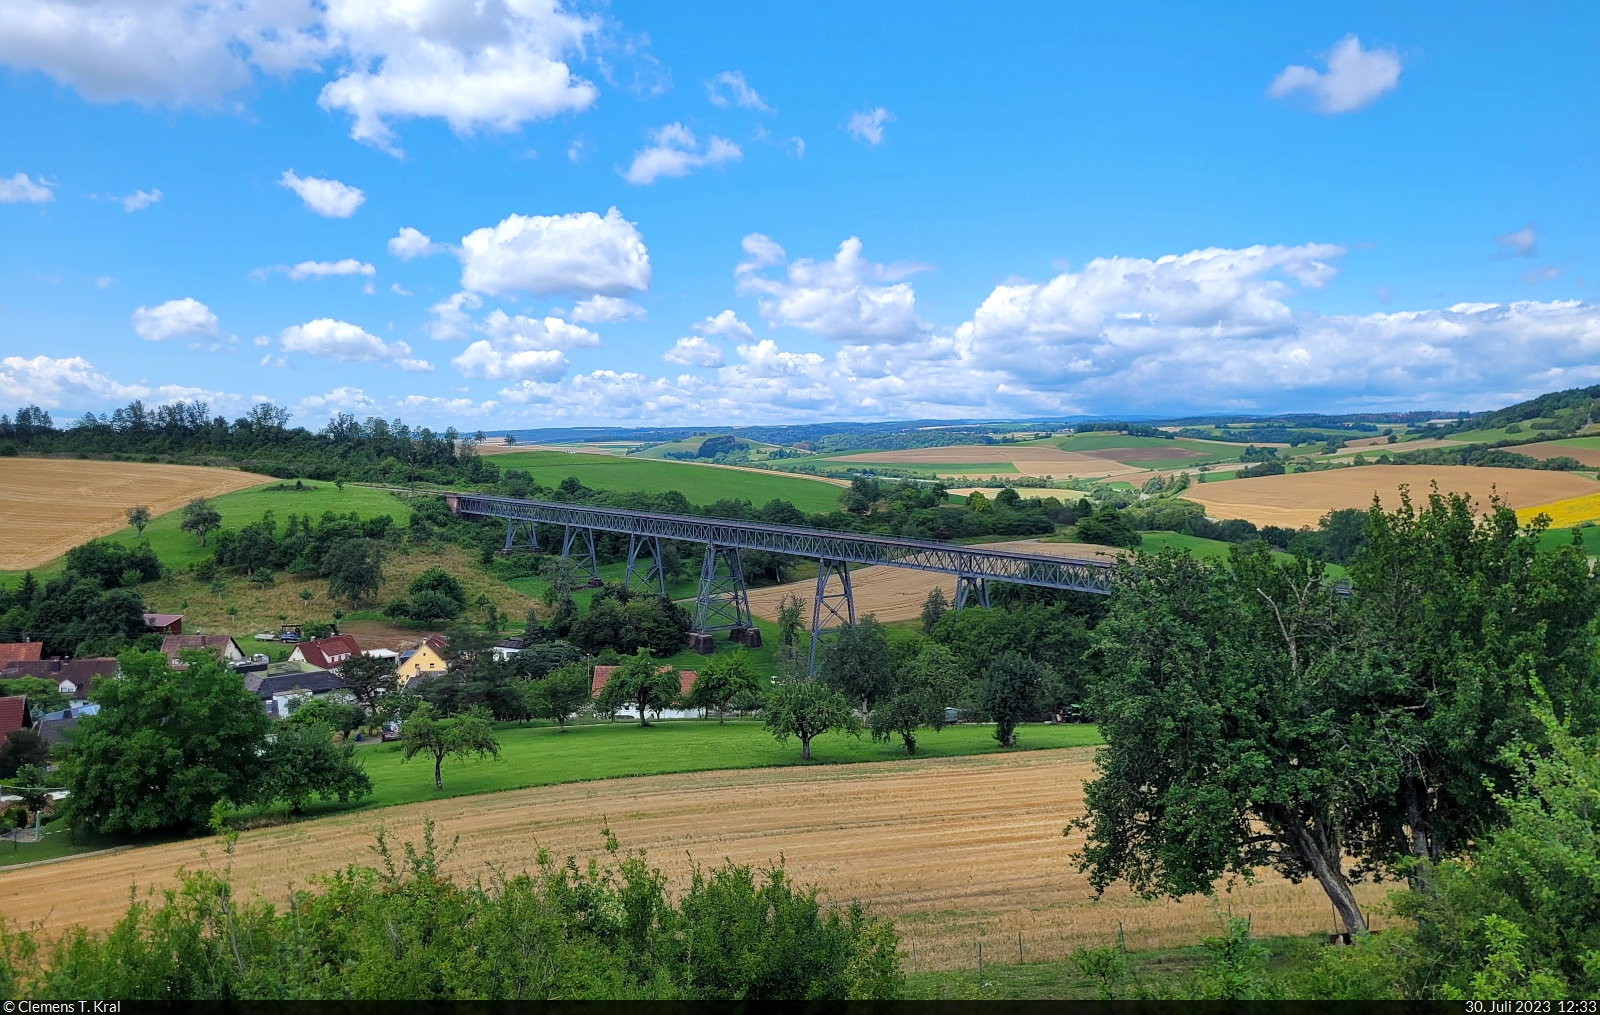 Blick auf das 264 Meter lange Epfenhofer Viadukt, eines der Erkennungsmerkmale der Sauschwänzlebahn zwischen Blumberg-Zollhaus und Weizen.

🕓 30.7.2023 | 12:33 Uhr